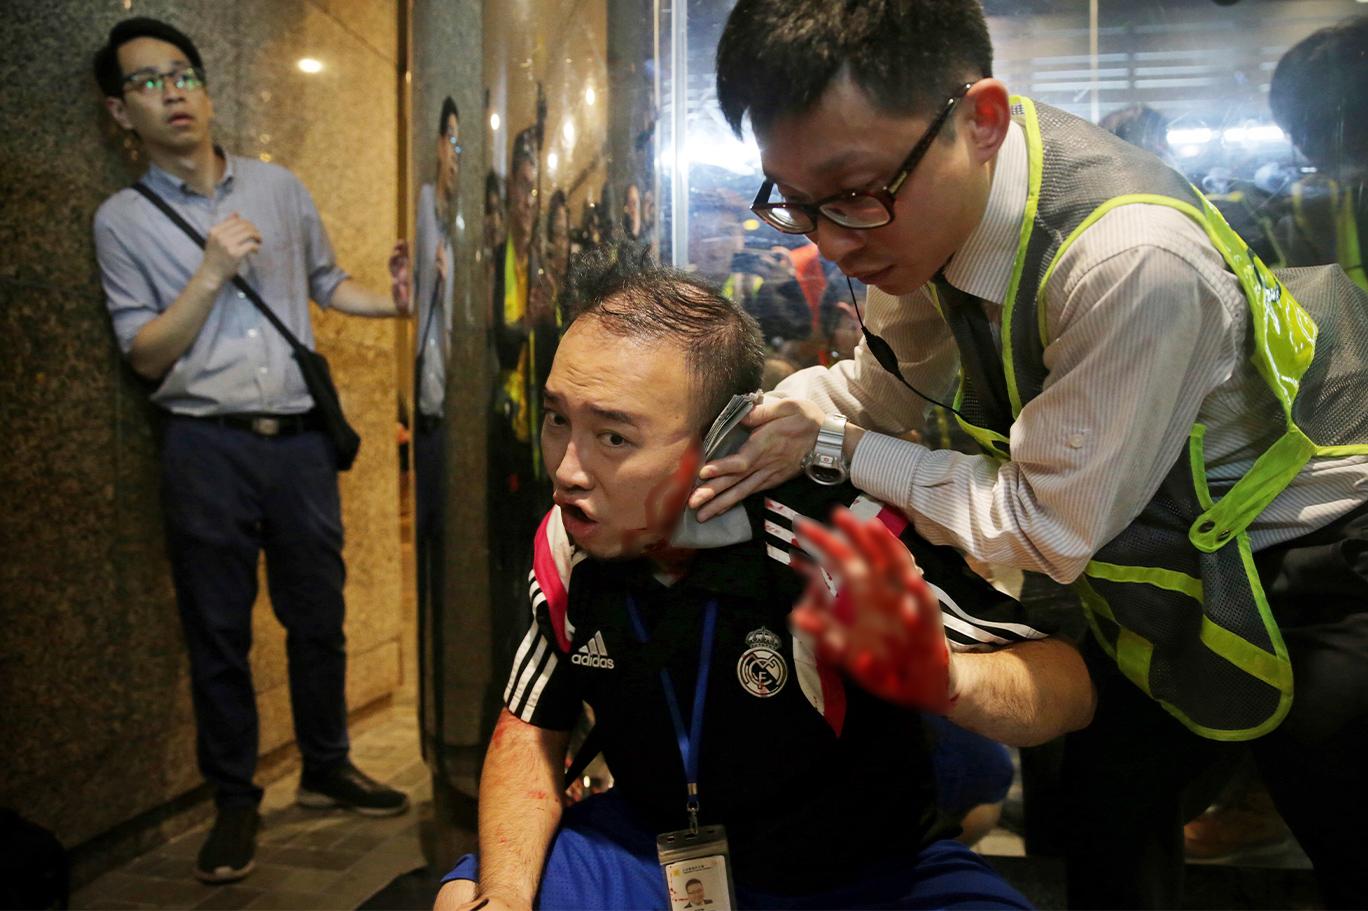 Hong Kong’da hükümet yanlısı bir kişi, meclis üyesinin kulağını ısırarak kopardı